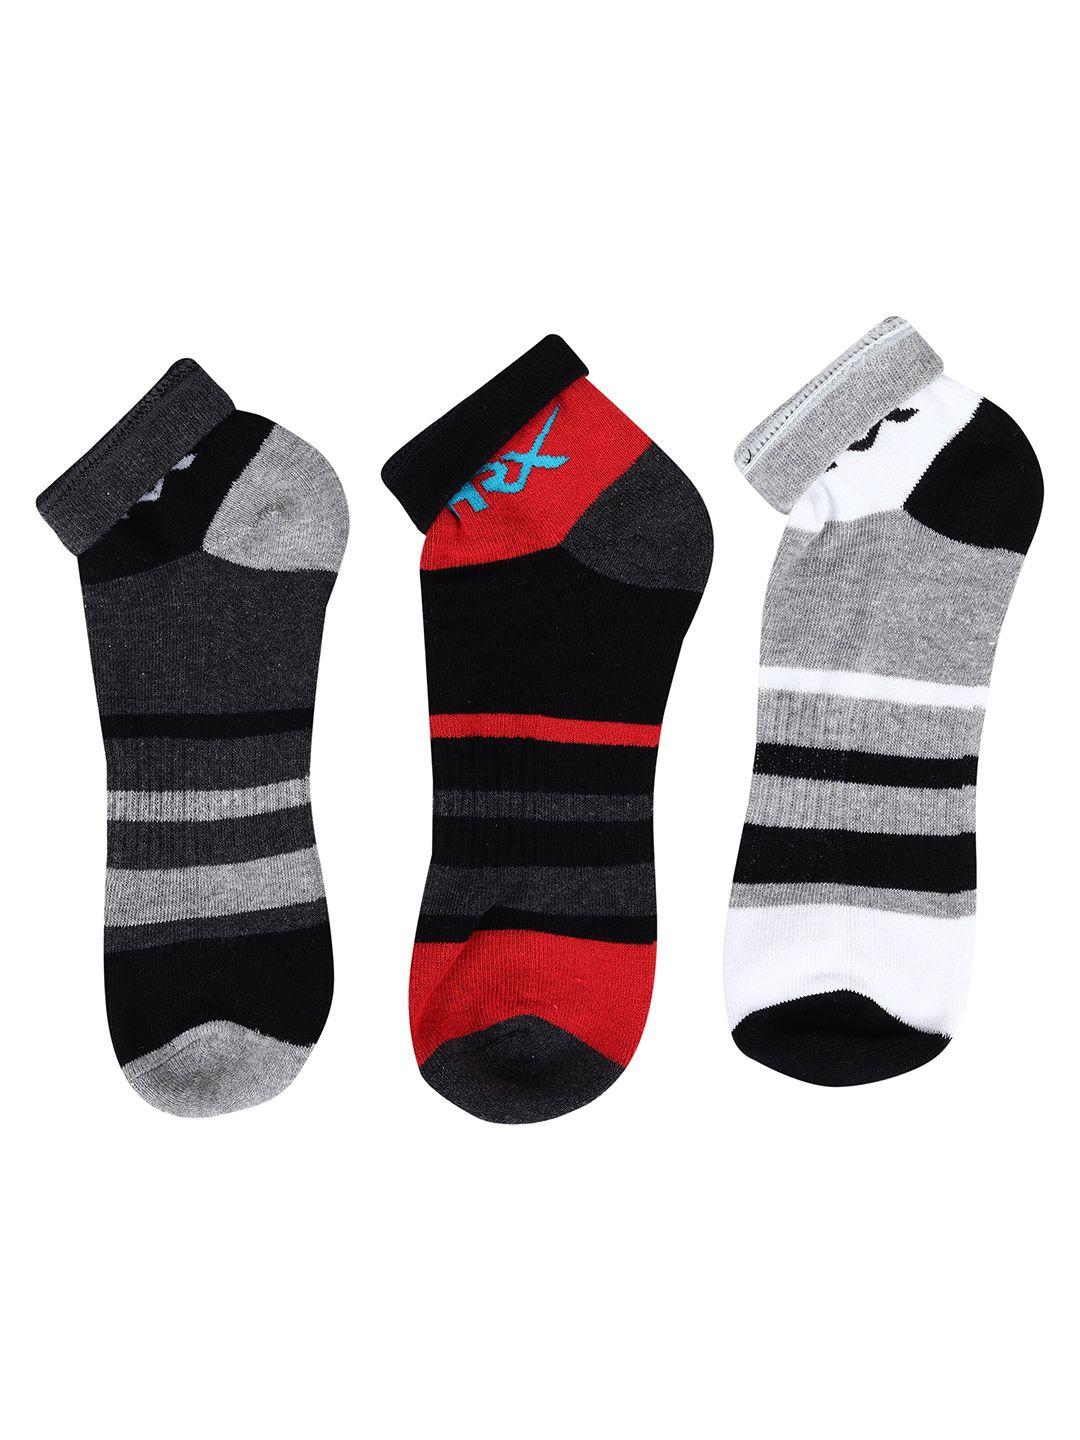 hrx by hrithik roshan unisex black & grey pack of 3 patterned ankle length socks